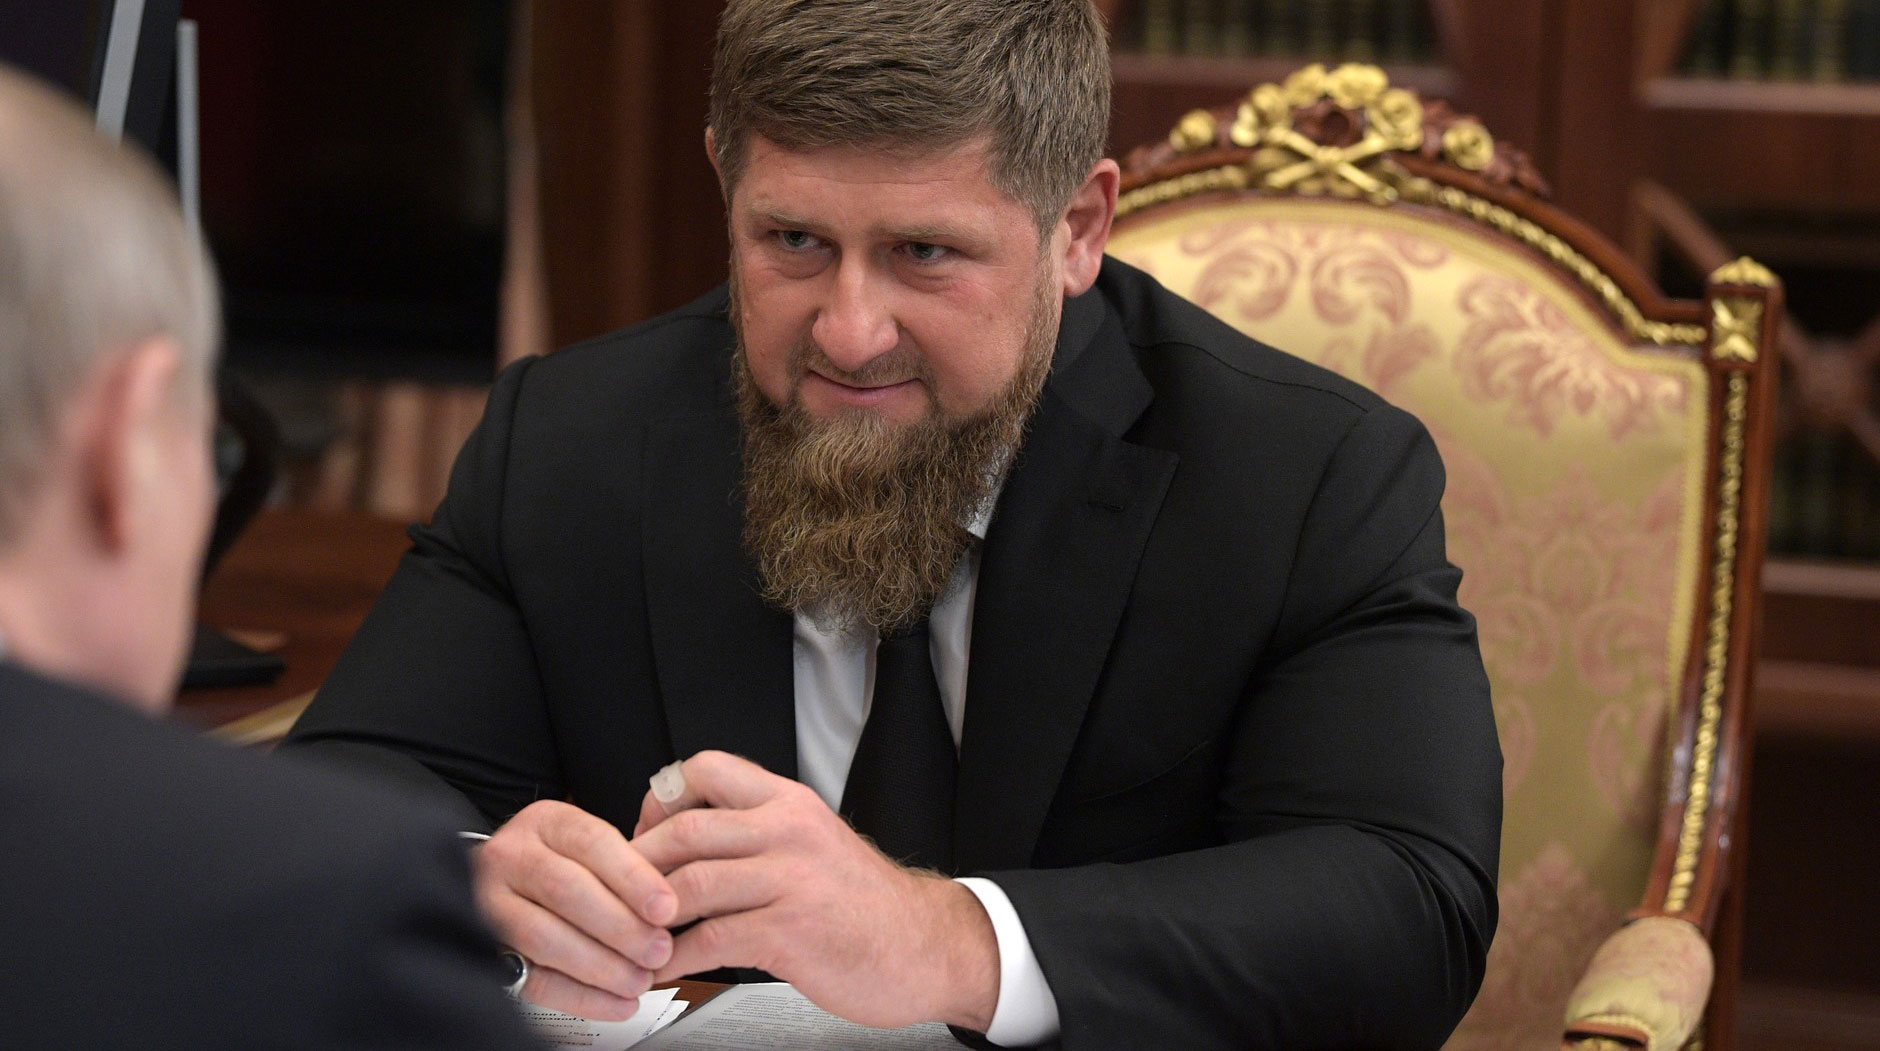 «Надо совещание по этому вопросу созвать», — пошутил глава Чеченской Республики undefined